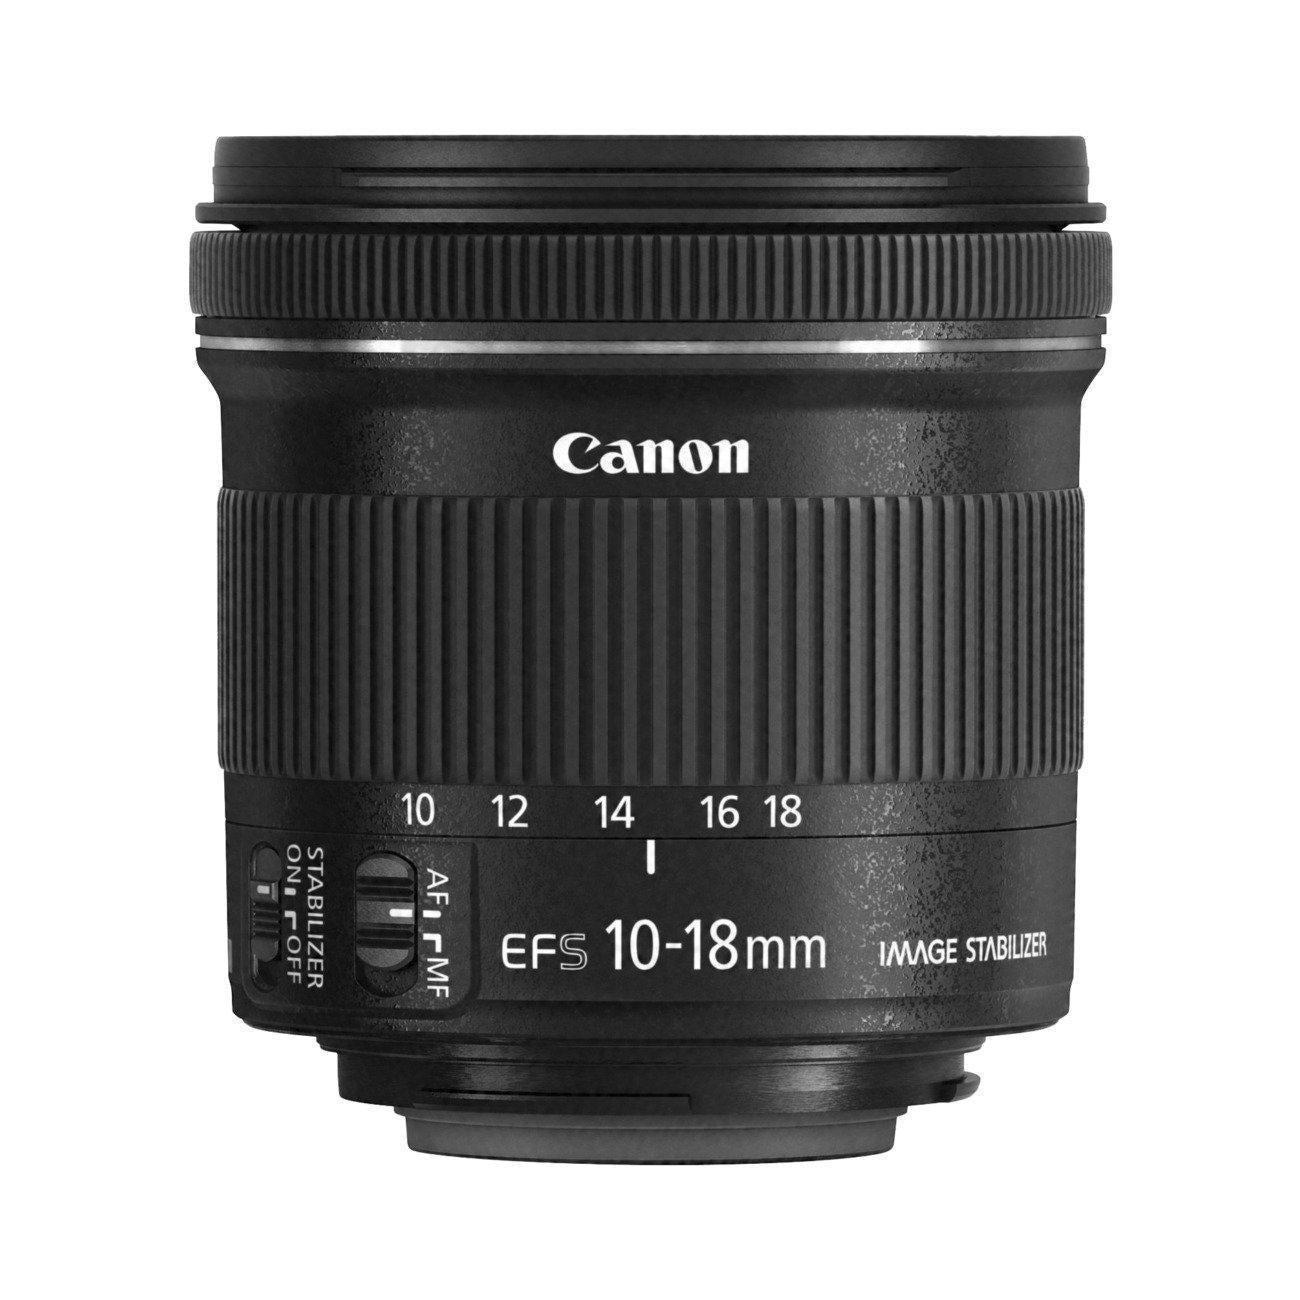 Canon EF-S 10-18mm f4.5-5.6 IS STM -Gar. Canon Italia -Cine Sud è da 46 anni sul mercato! 9519B005